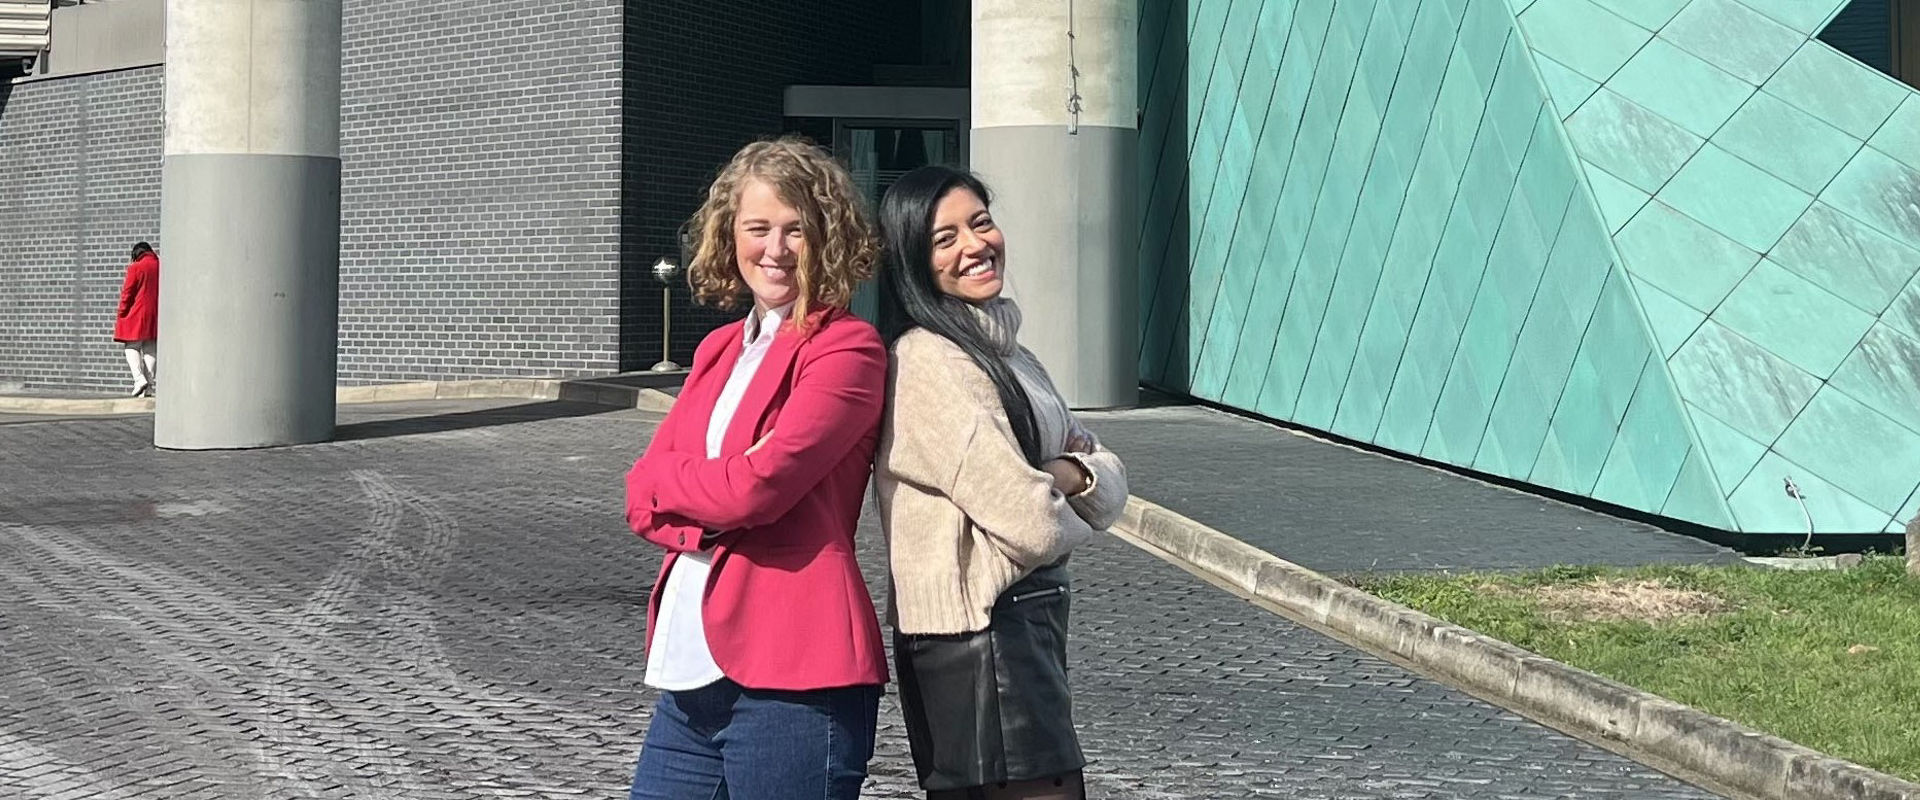 Gesa Kristin Zielke (links) und Natalia Crede vor einem Gebäude ihres  Arbeitgebers B. Braun.